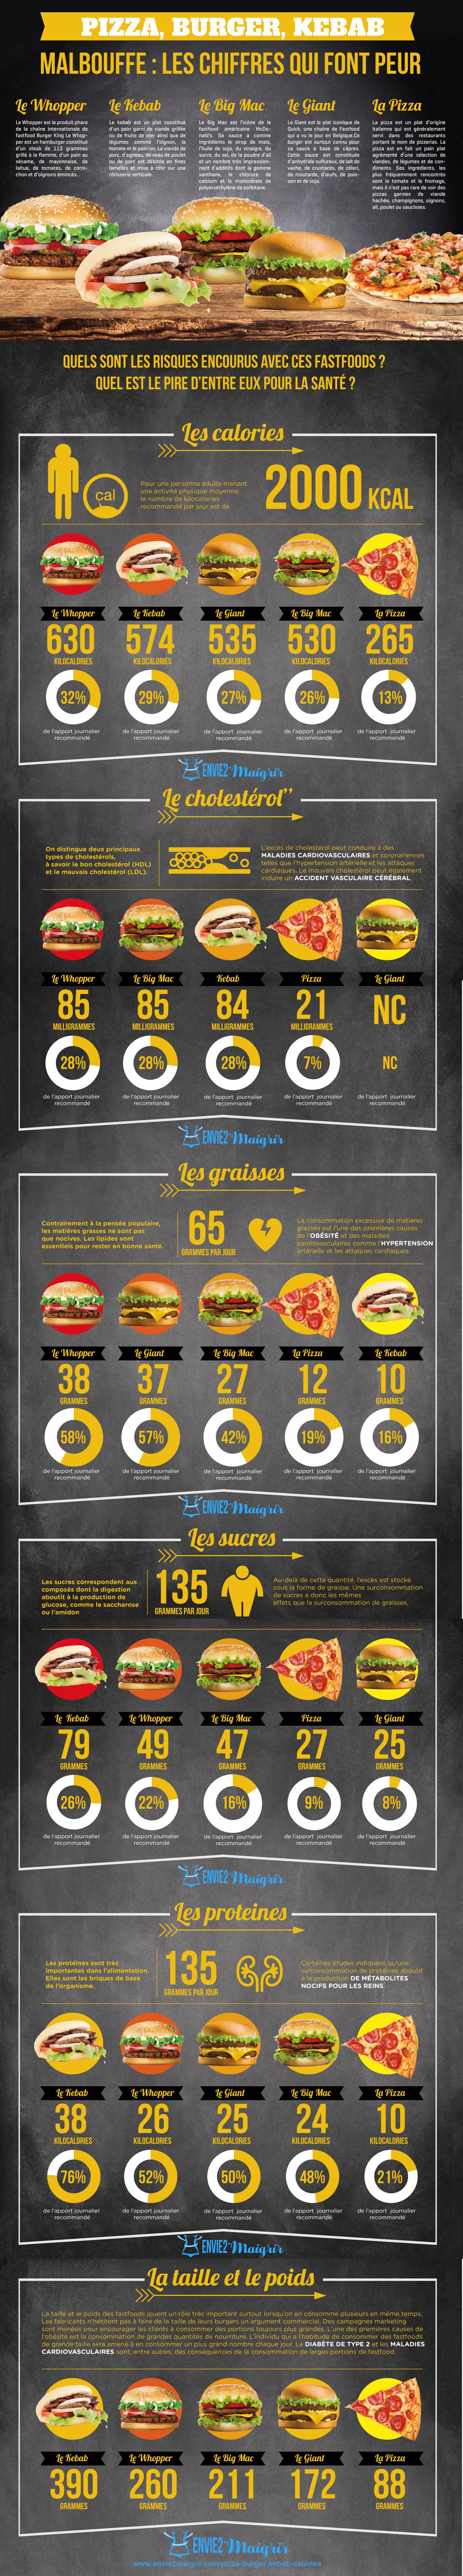 Infografía sobre la comida basura